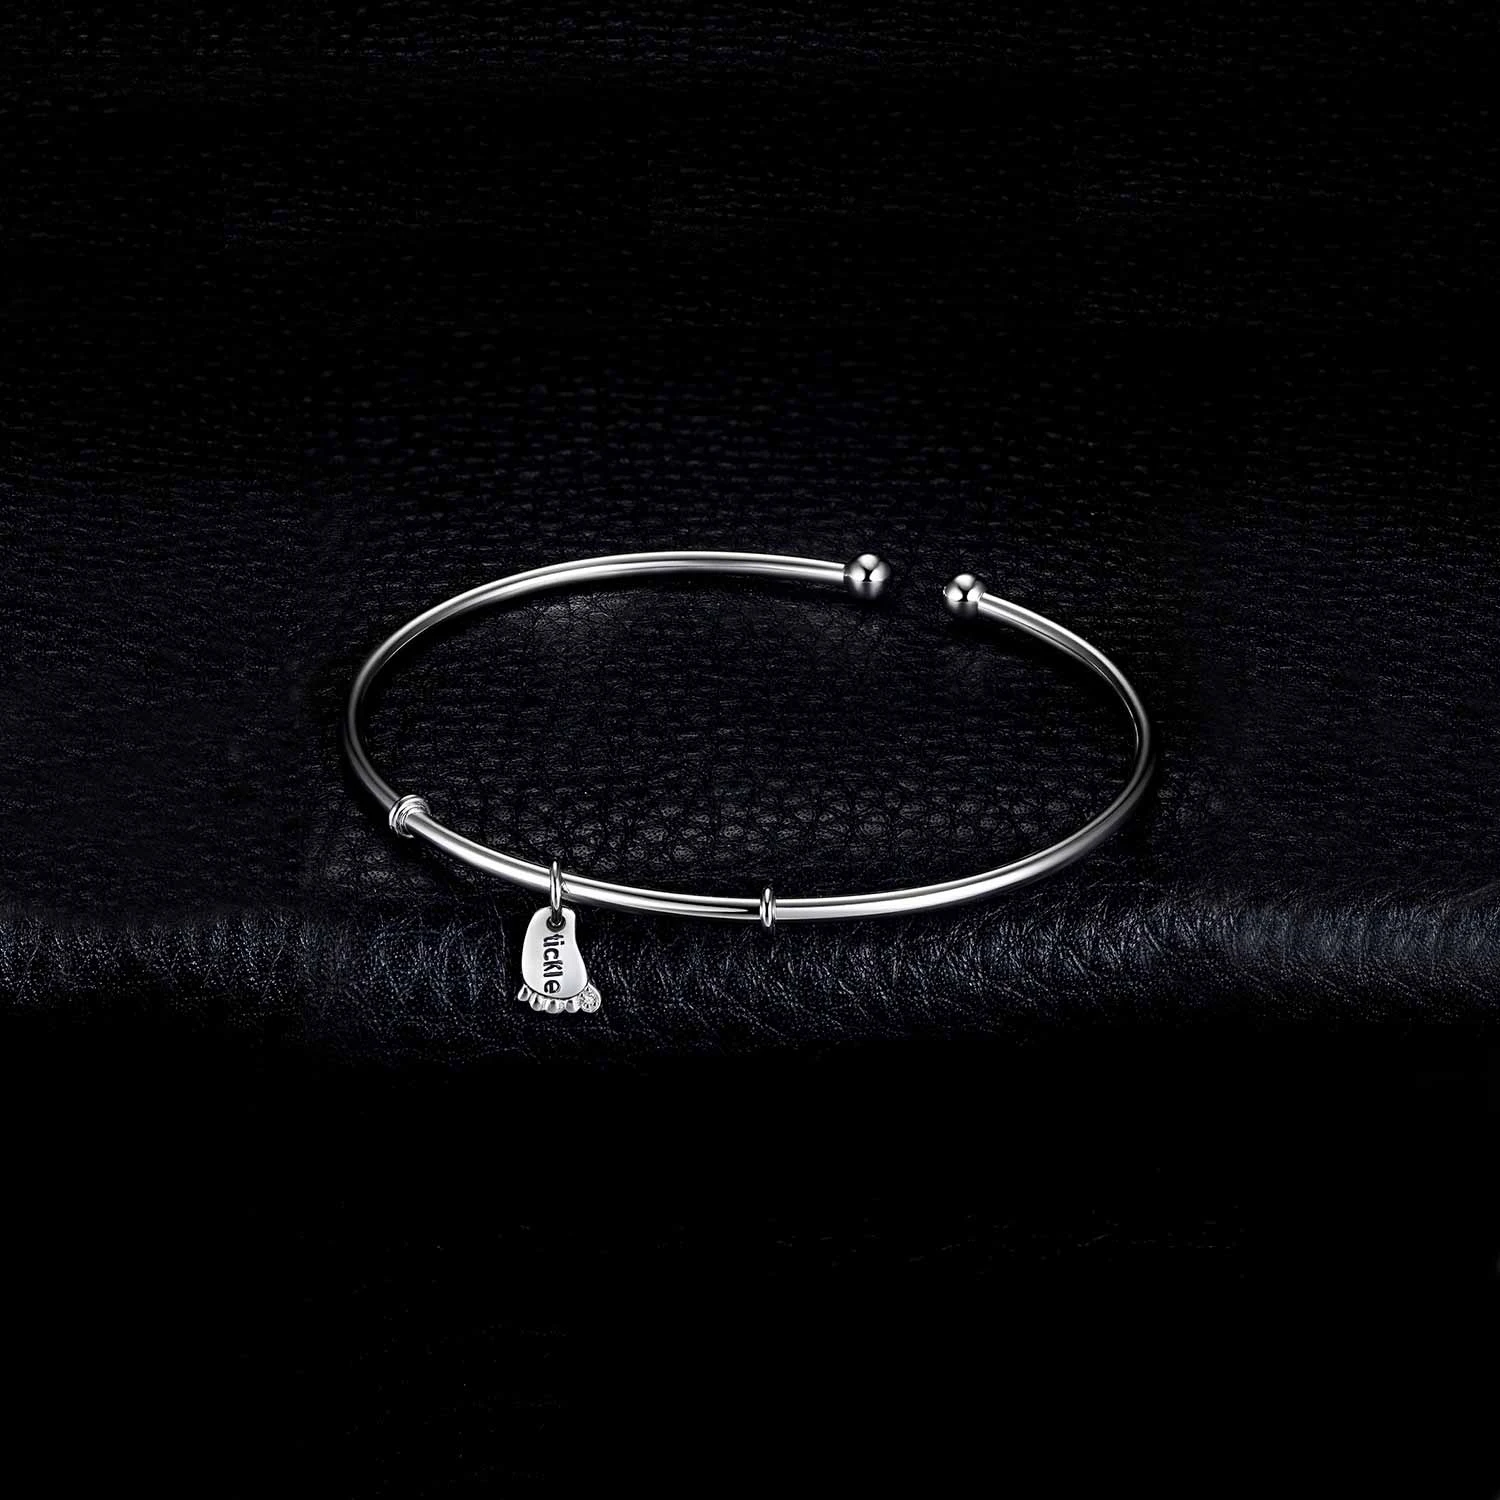 Foot Love Bracelet Silver Bracelet Charm Bracelet Cuff Bangles 925 Sterling Silver Bracelets For Women Silver 925 Jewelry Making